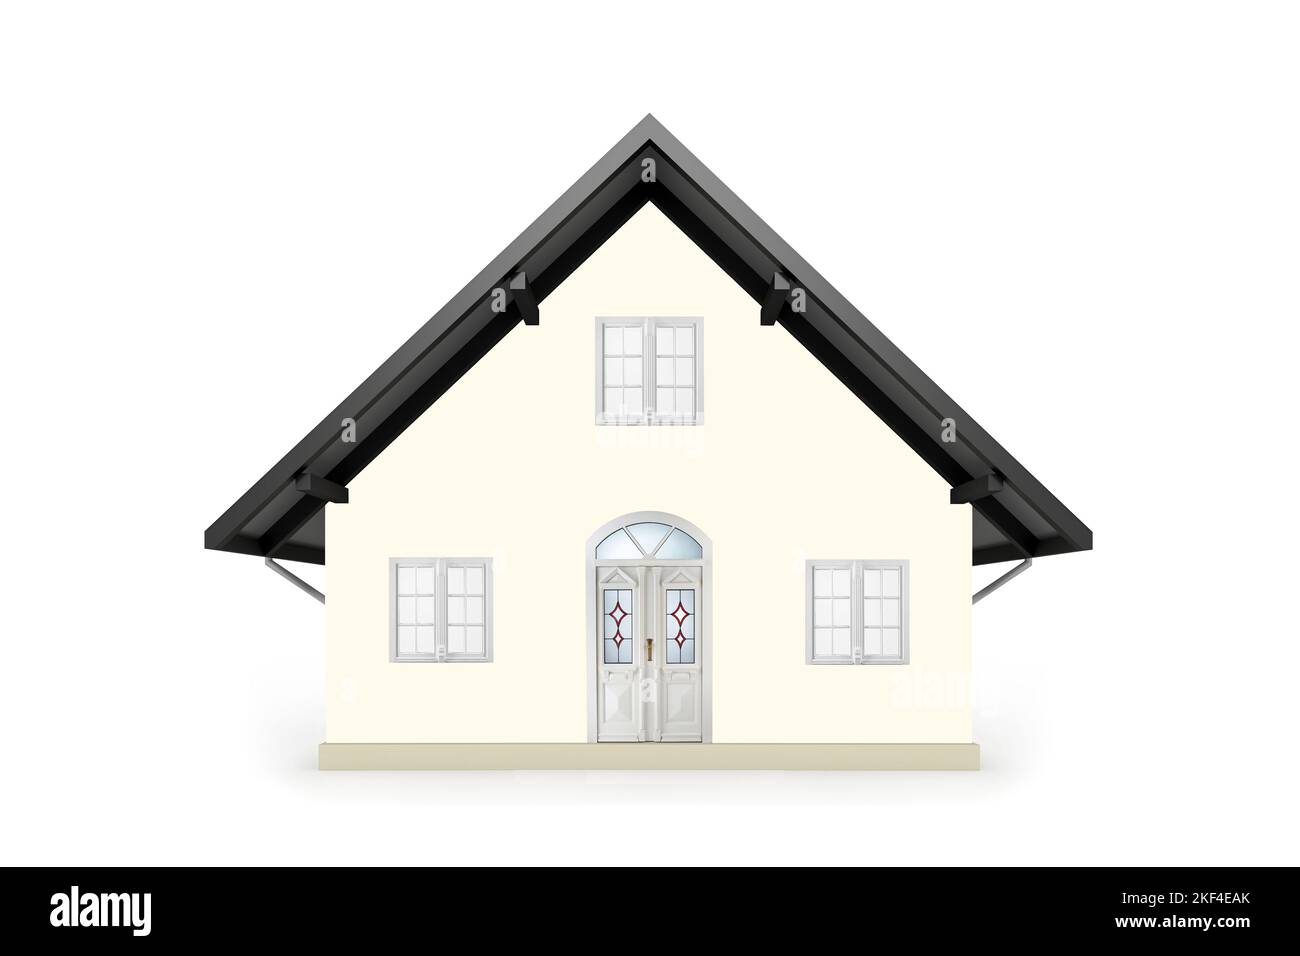 Ein pastellfarbenes Einfamilienhaus, weisse Fenster, weisse Eingangstür, Bleiverglasung, Stock Photo